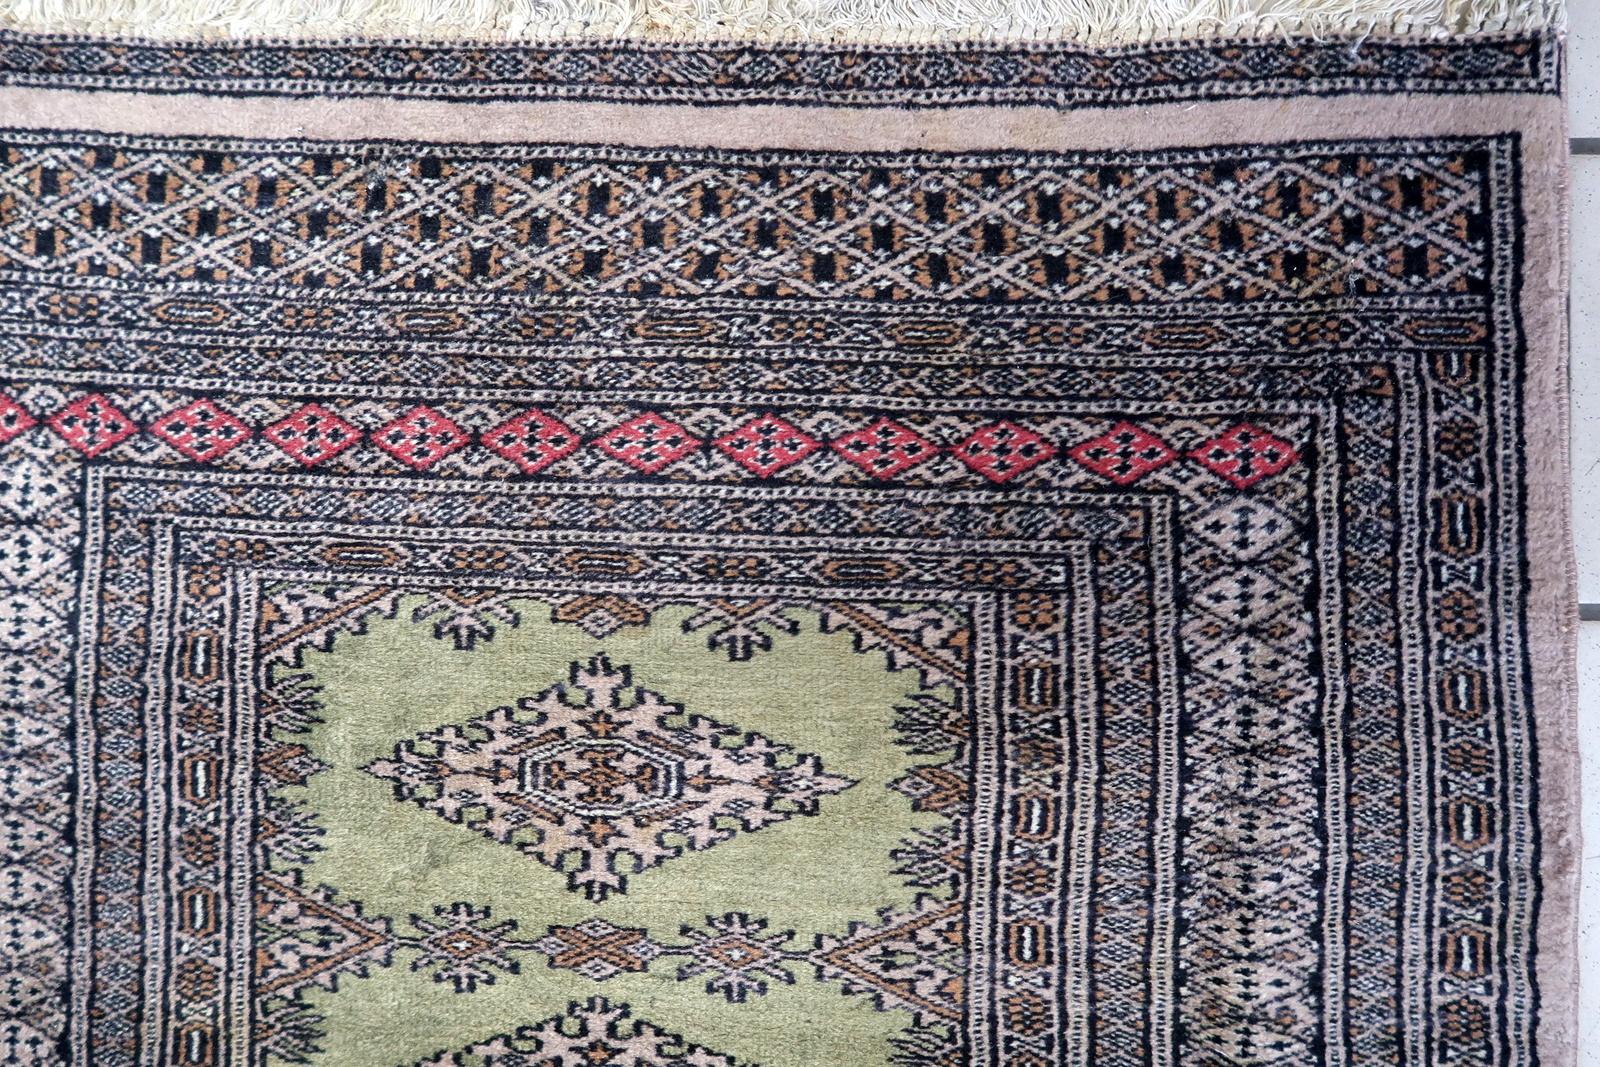 Verschönern Sie Ihren Raum mit dem zeitlosen Charme dieses handgefertigten usbekischen Vintage-Teppichs aus Buchara. Dieses exquisite Stück aus den 1950er Jahren misst 2,6' x 4' (82cm x 122cm) und verströmt das reiche Erbe usbekischer